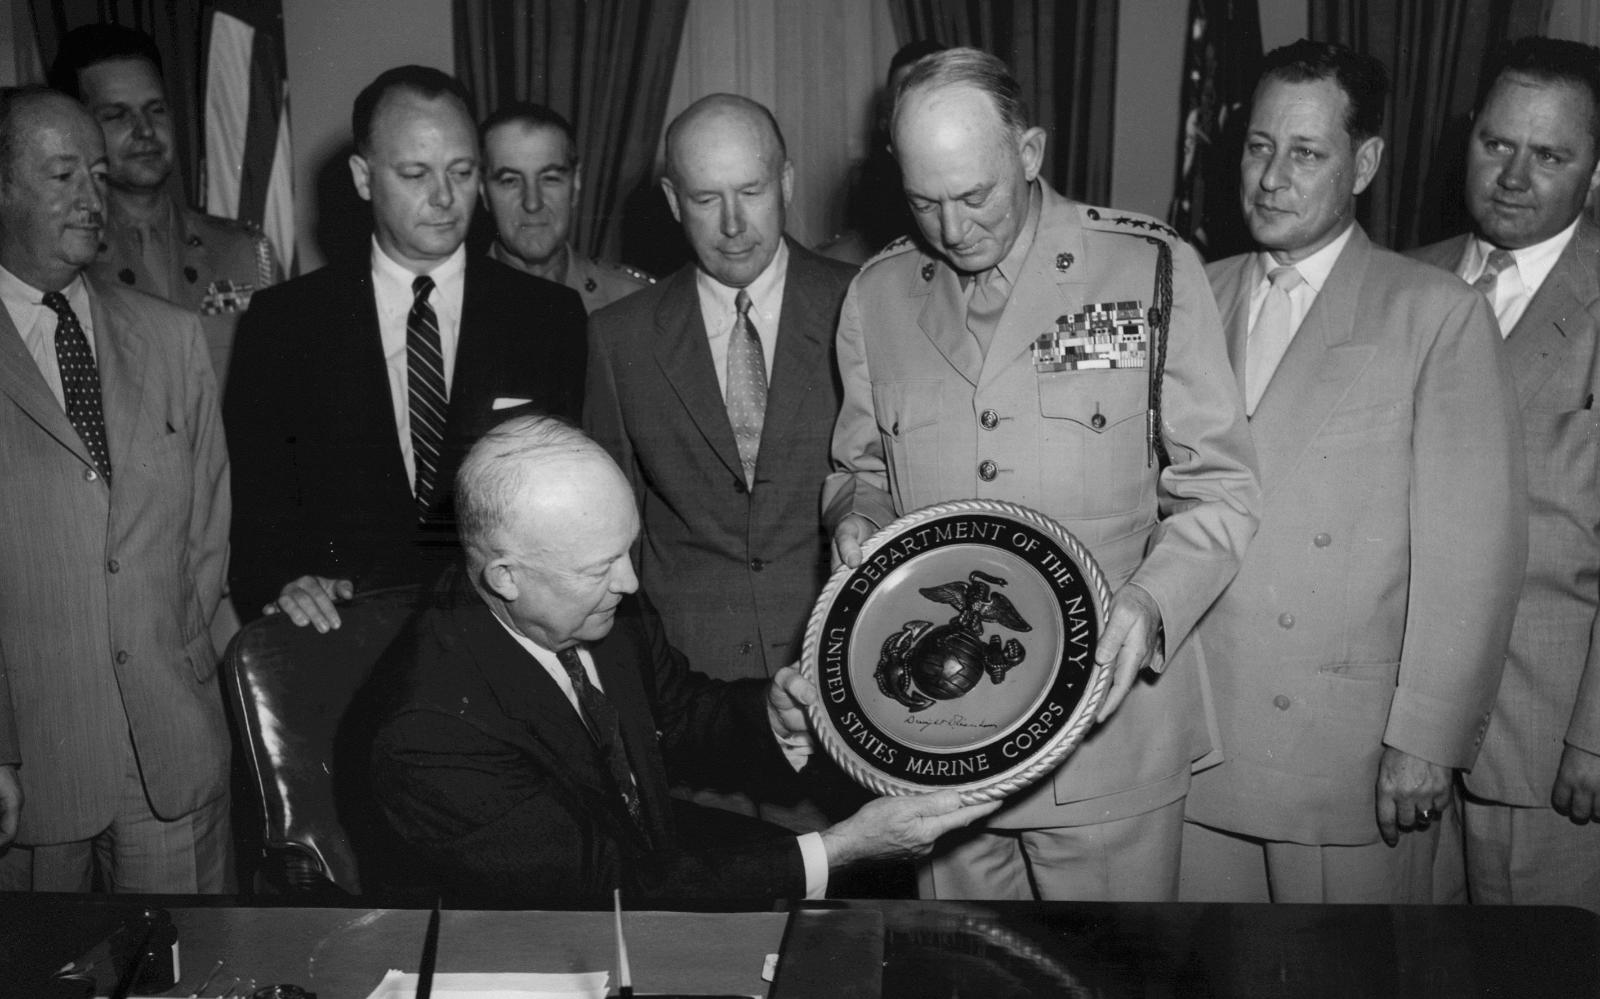 Эйзенхауэр презентует Печать Корпуса Морской пехоты, 22 июня 1954. 